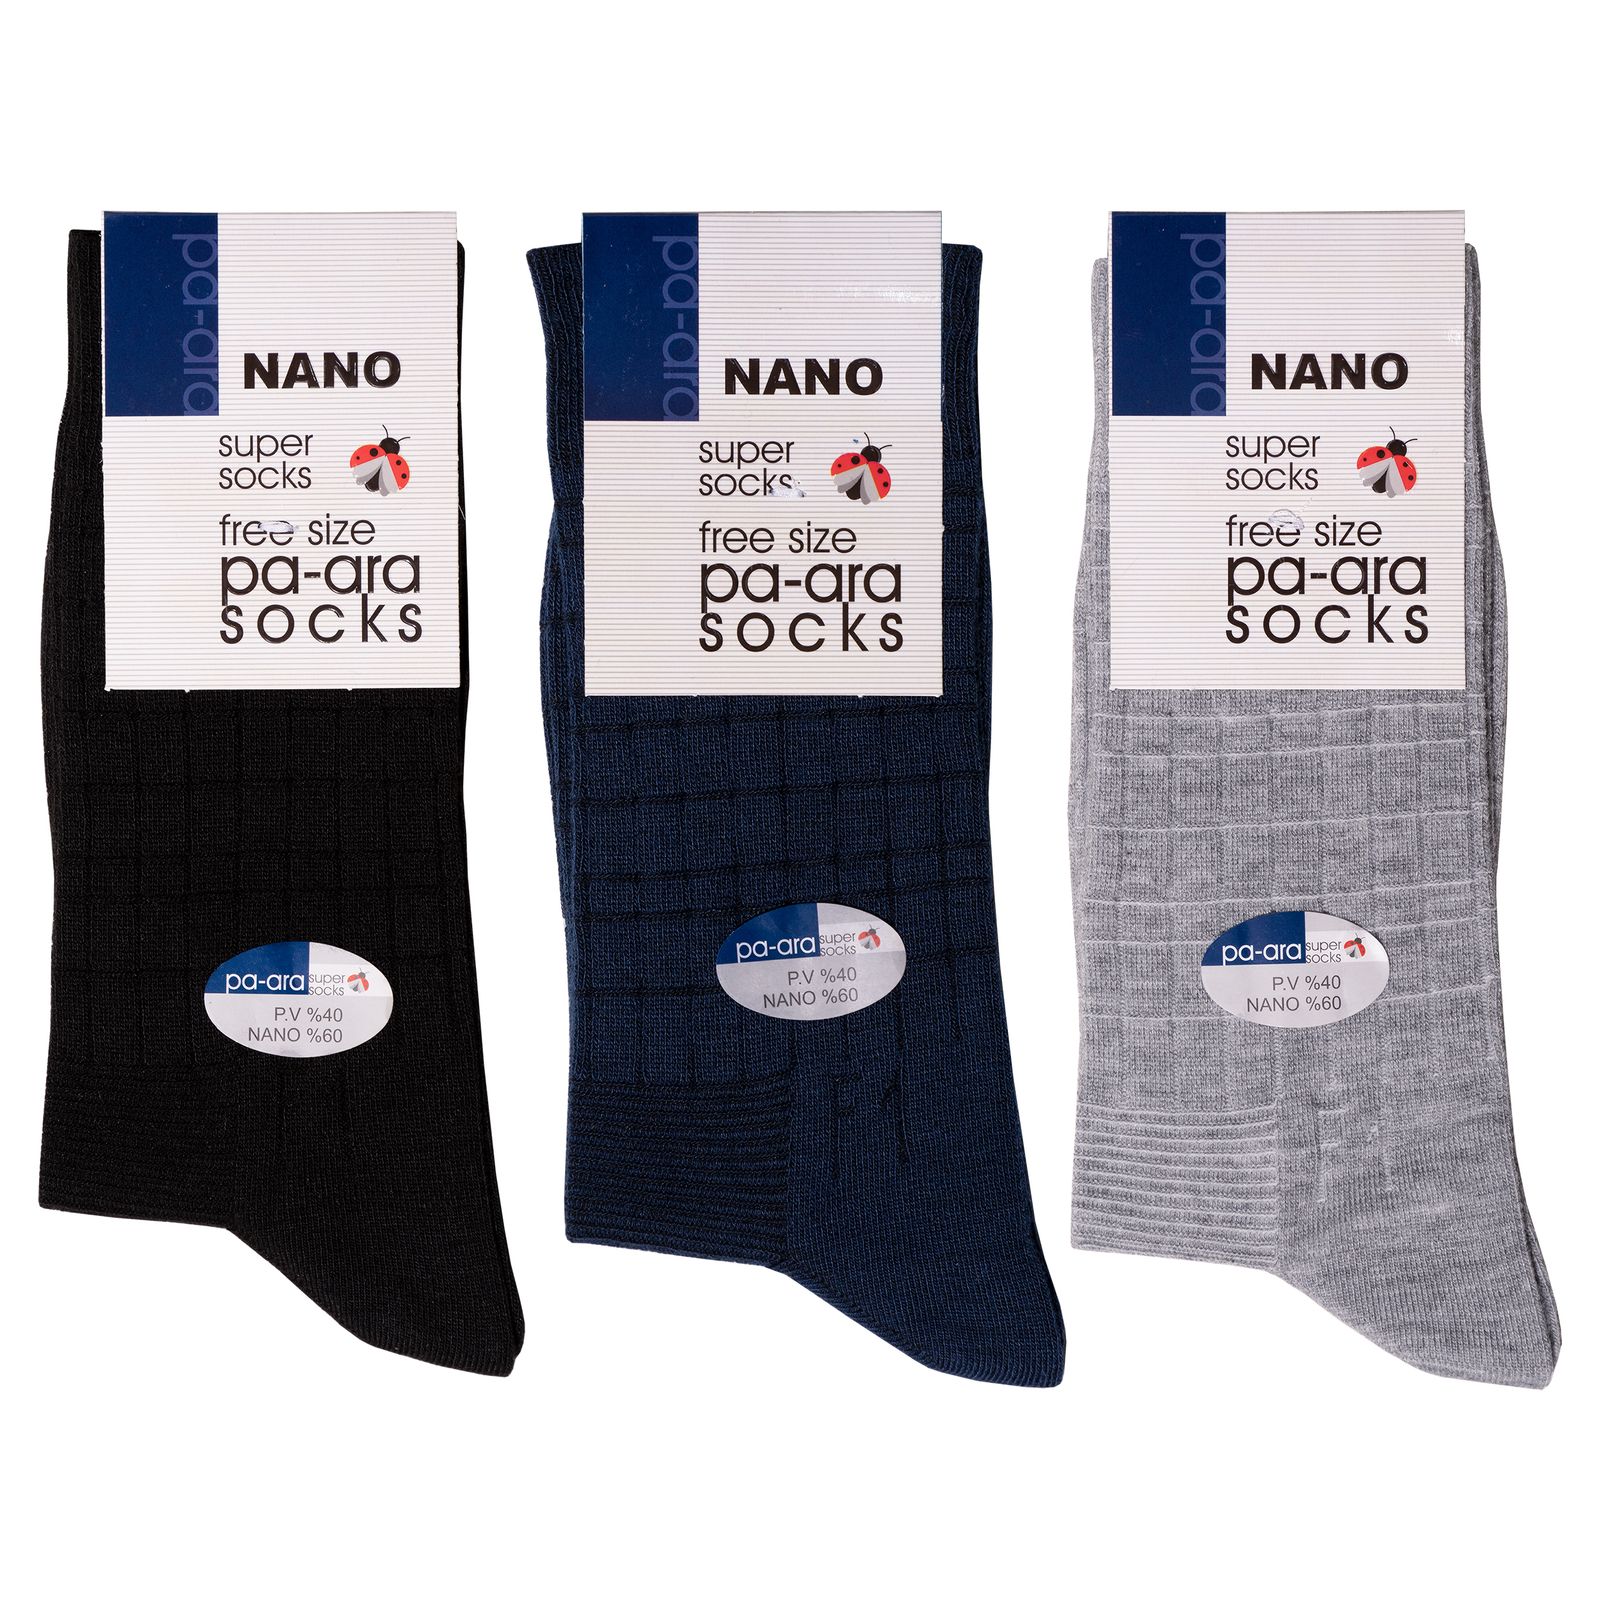 جوراب مردانه پاآرا مدل نانو 60 کد 6011 مجموعه 3 عددی -  - 1